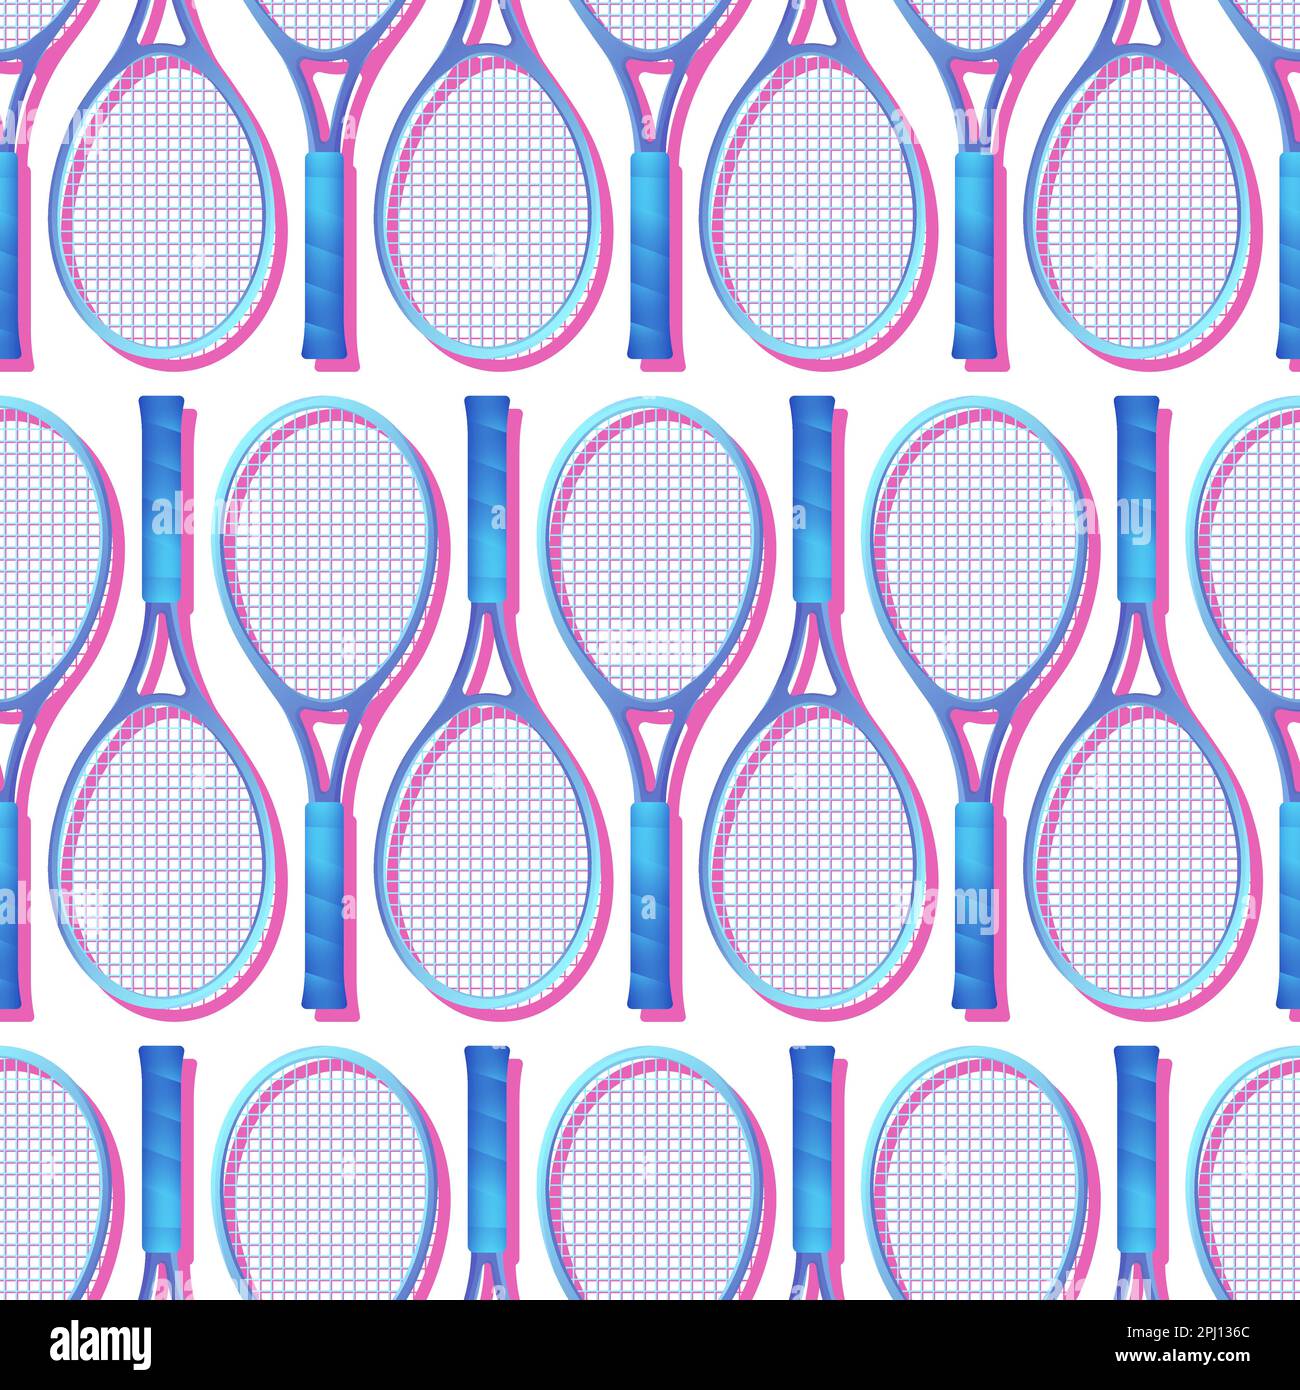 Blaue Tennisschläger mit nahtlosem Muster. Sportausrüstung. Tennisschlägermuster auf weißem Hintergrund. Vektordarstellung. Stock Vektor